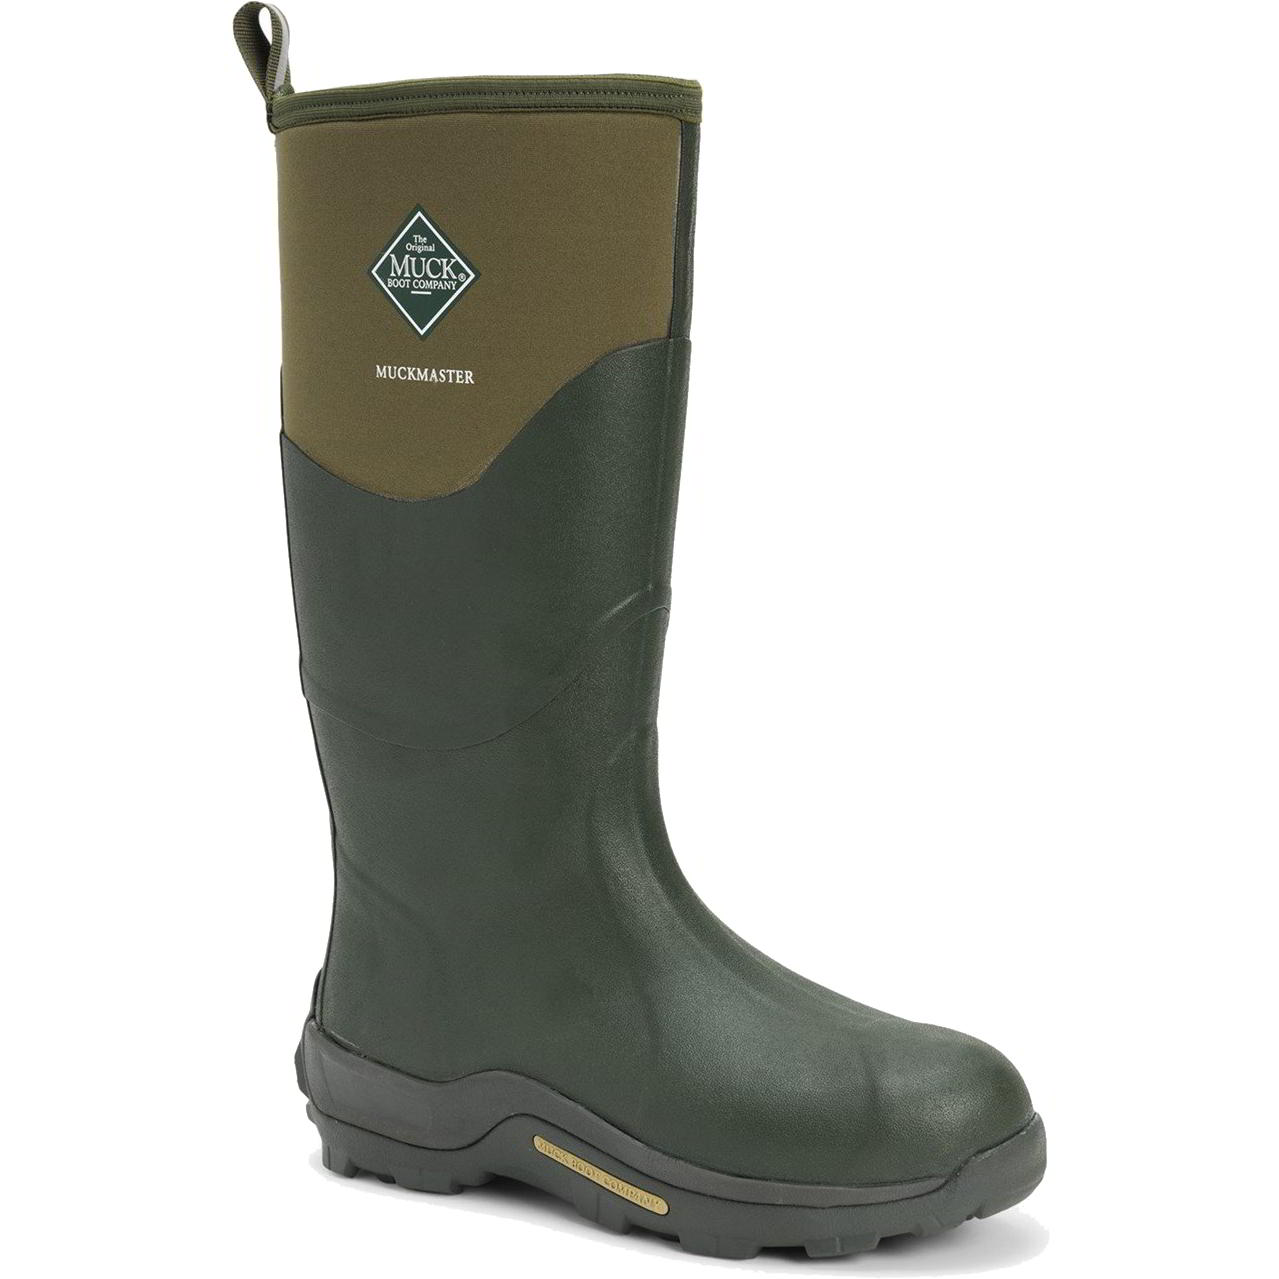 Muck Boots Mens Womens Master Neoprene Wellies Rain - Moss 2951